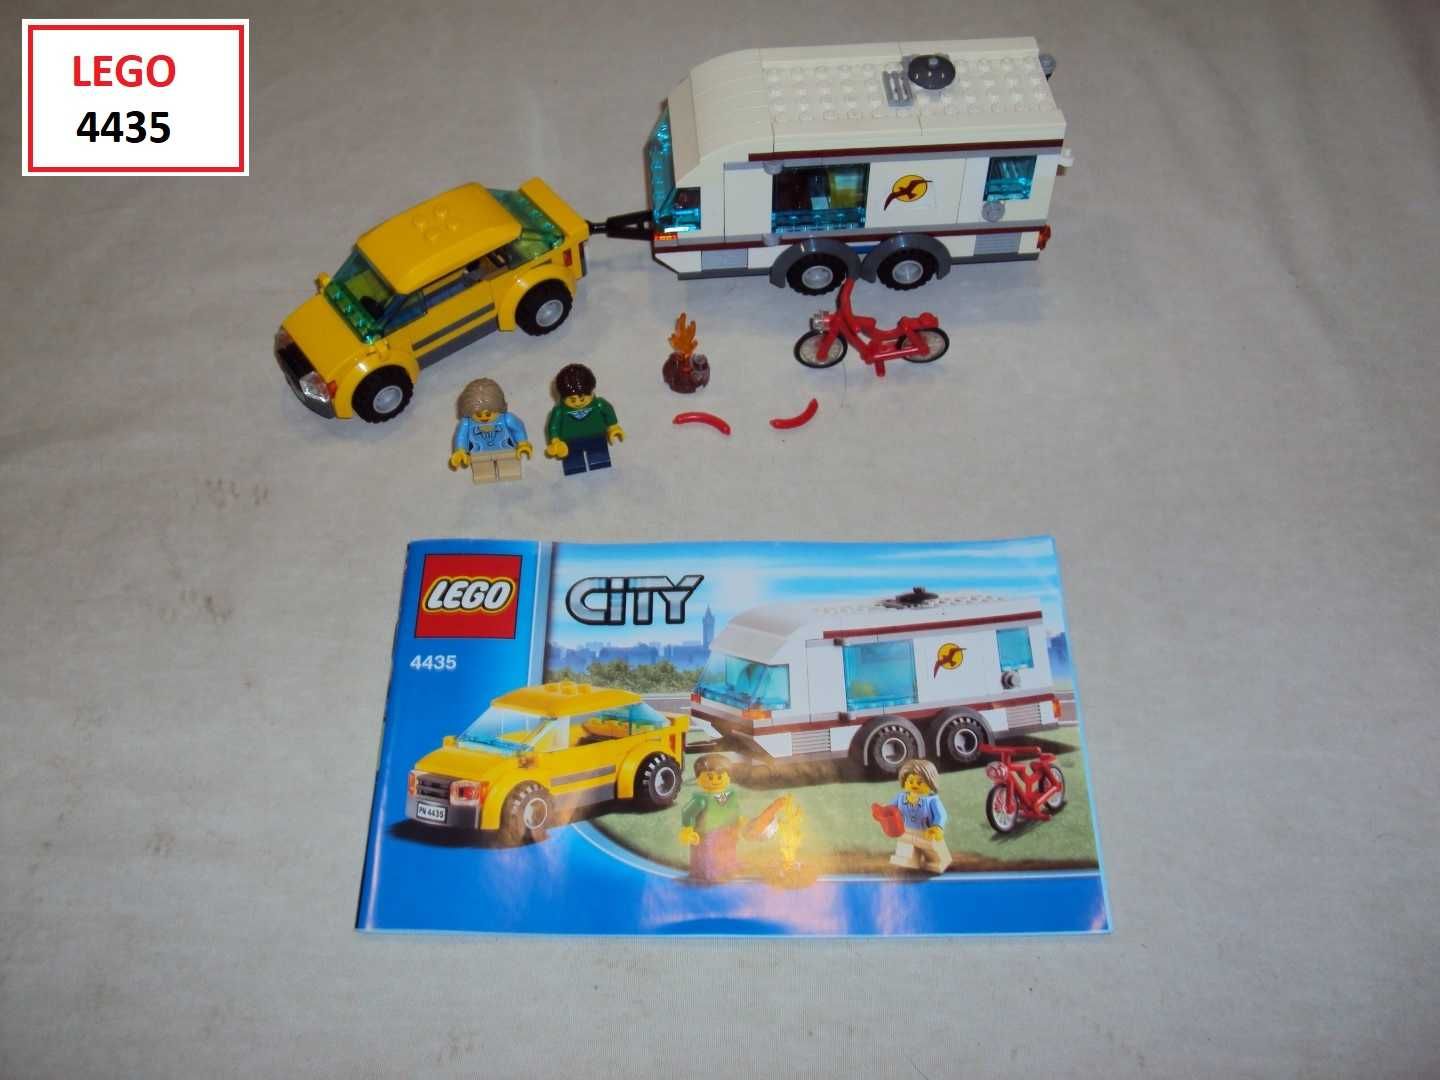 LEGO City: 60118; 60054; 60117; 4435; 7891; 60017; 60150